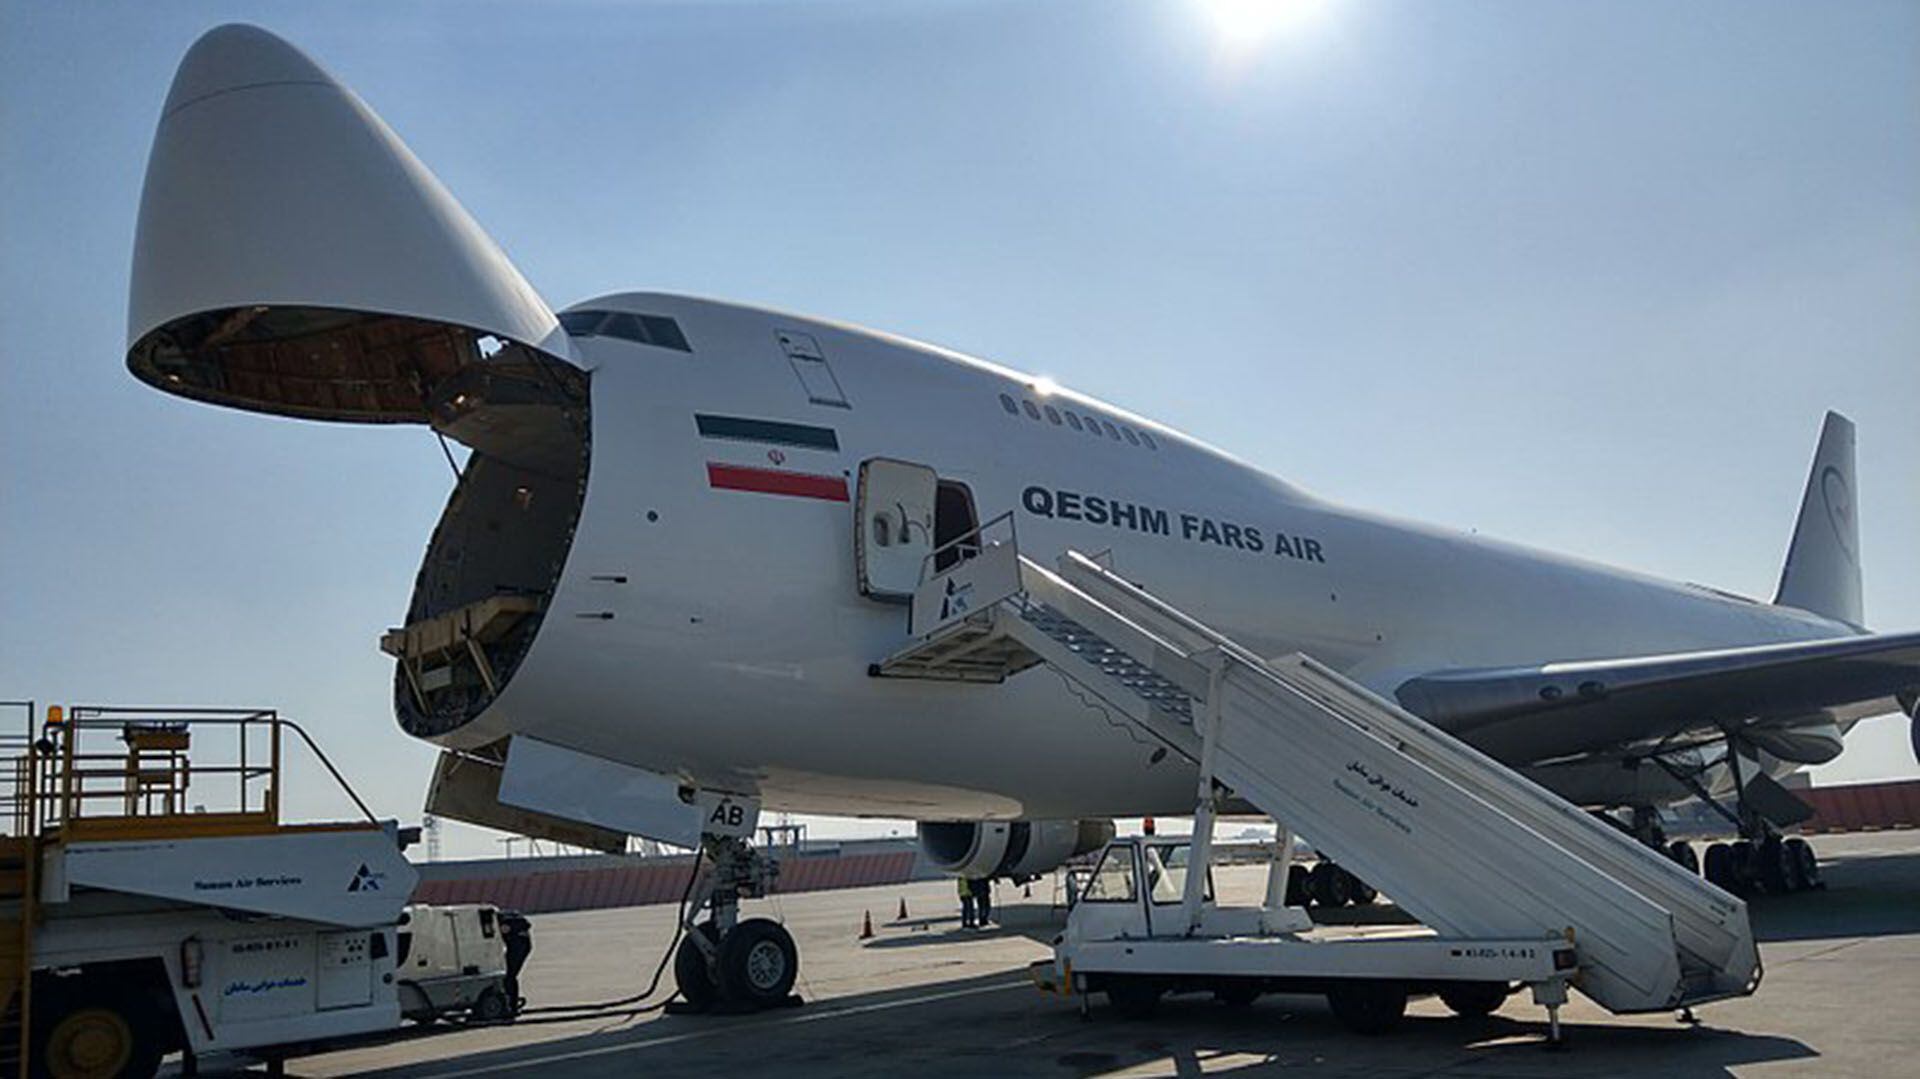 El avión de Fars Air Qeshm